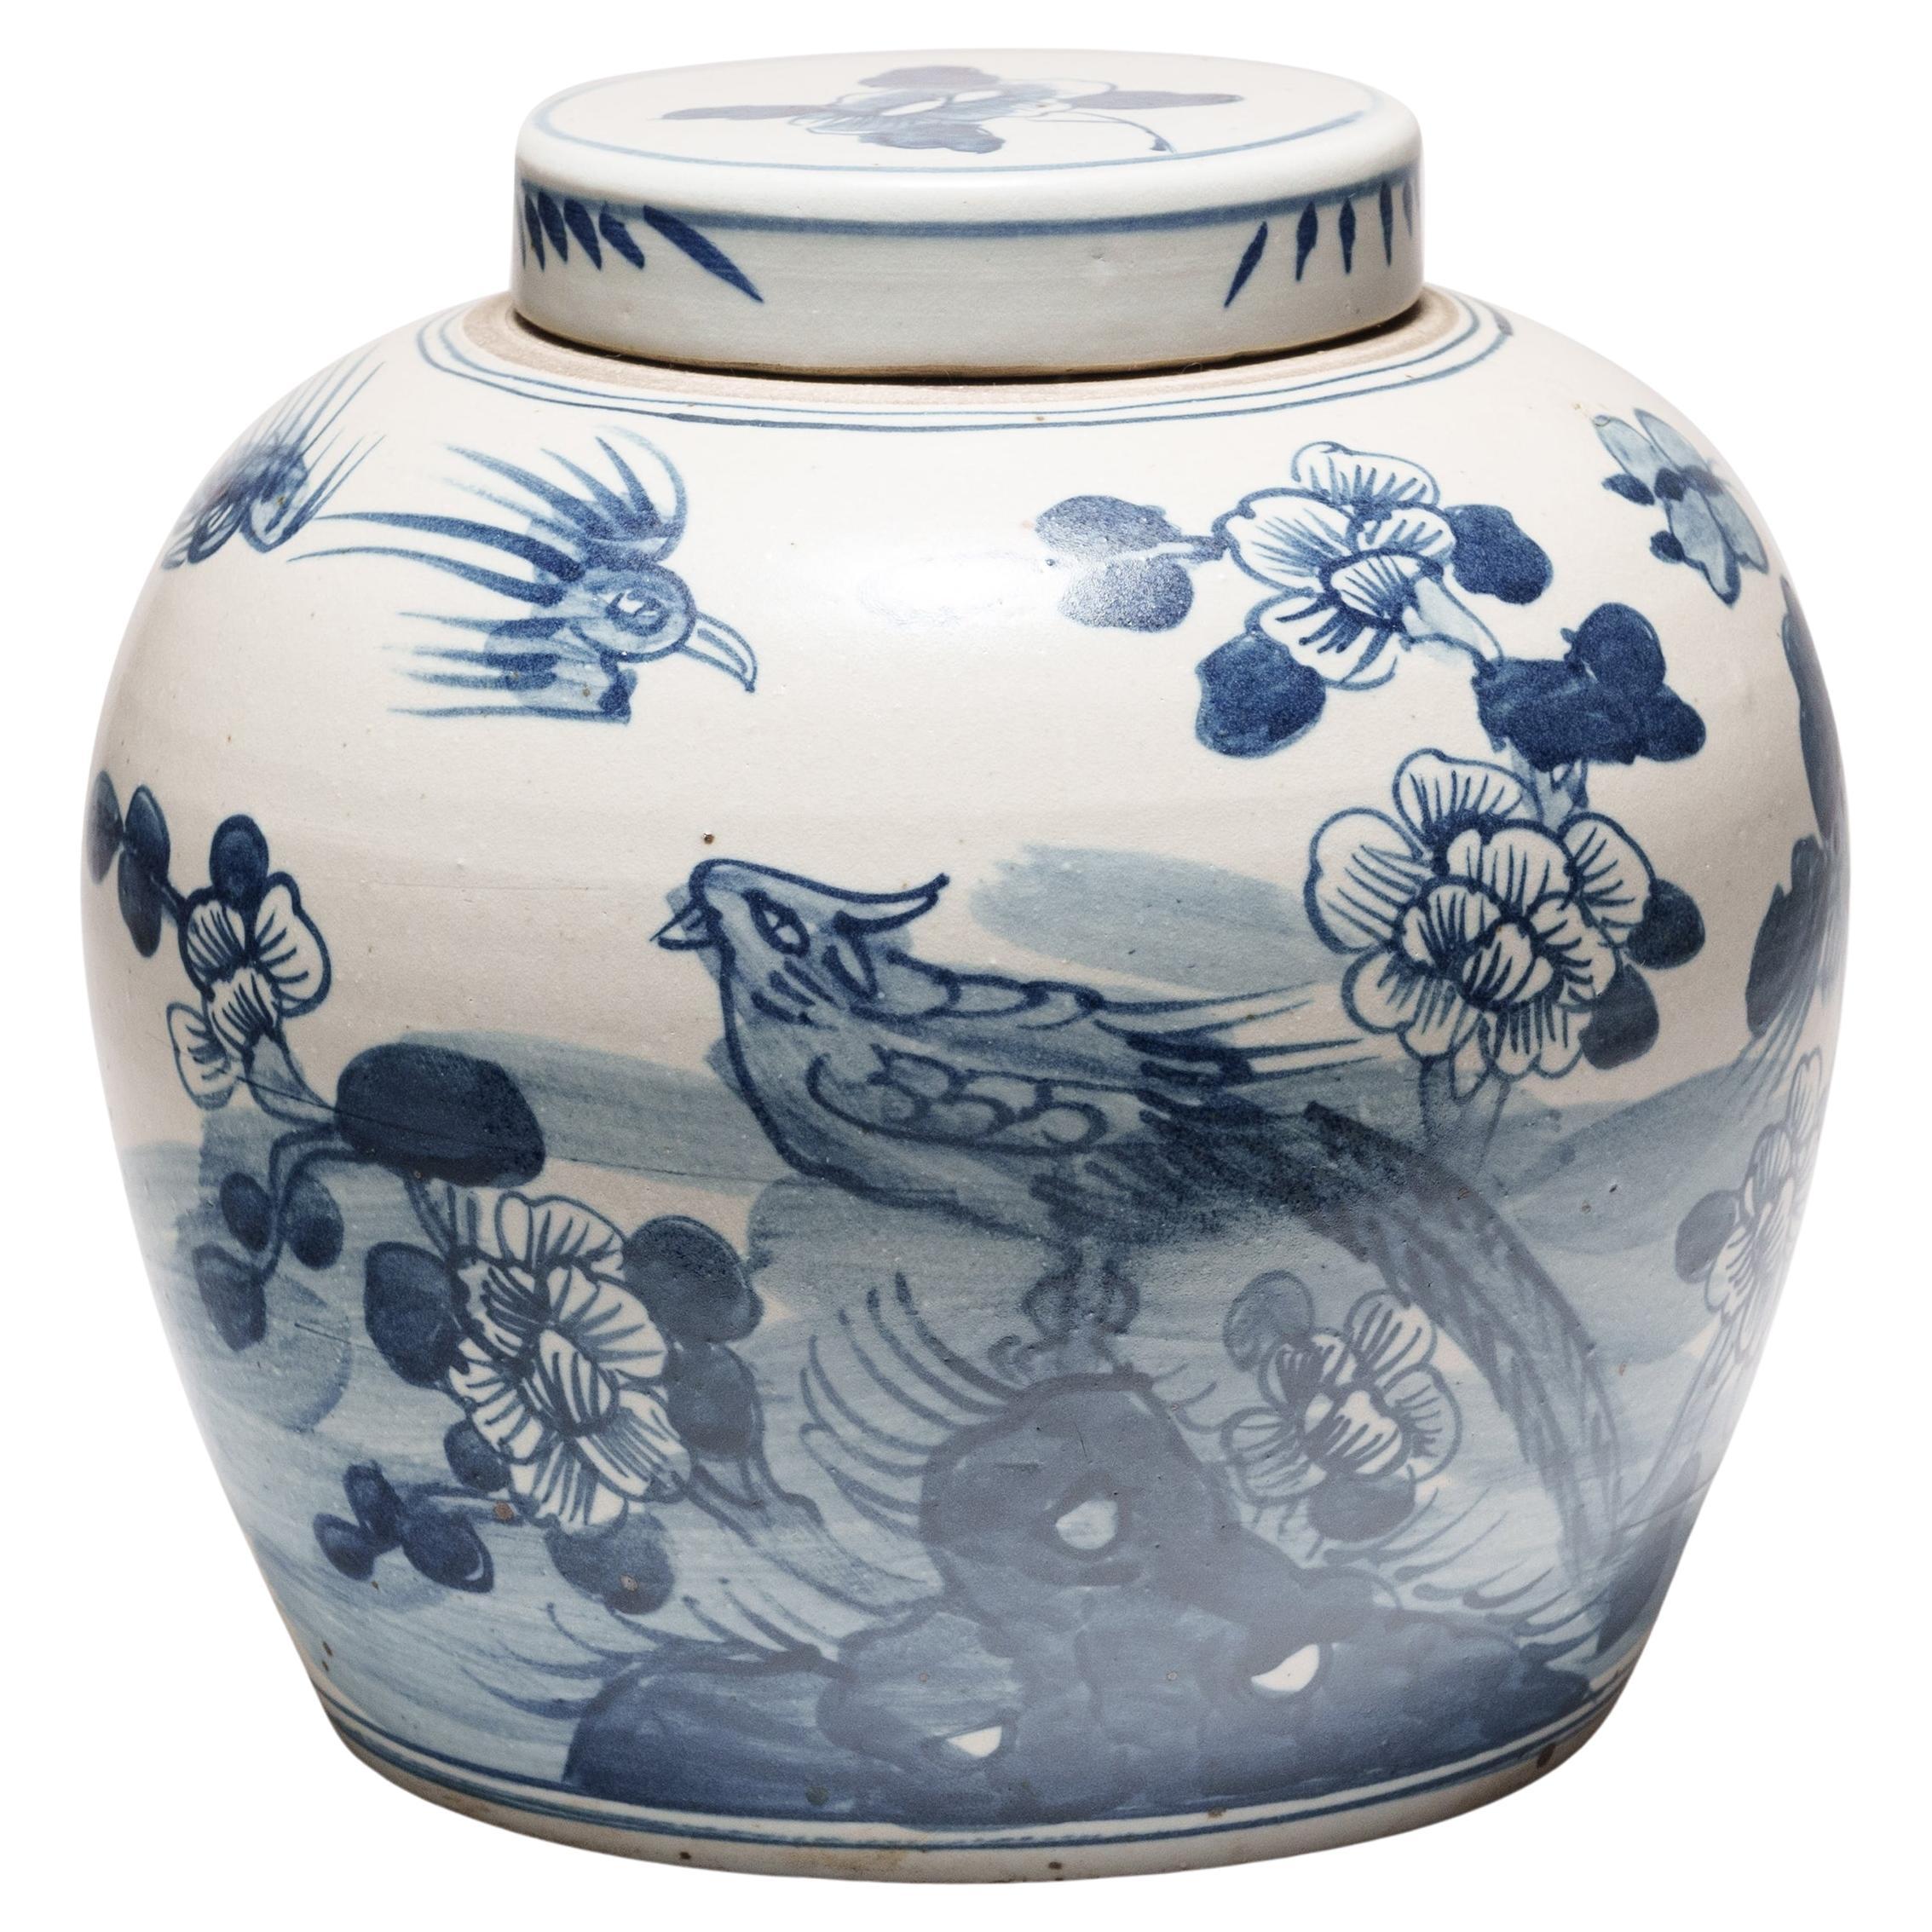 Pot chinois bleu et blanc avec oiseaux et fleurs